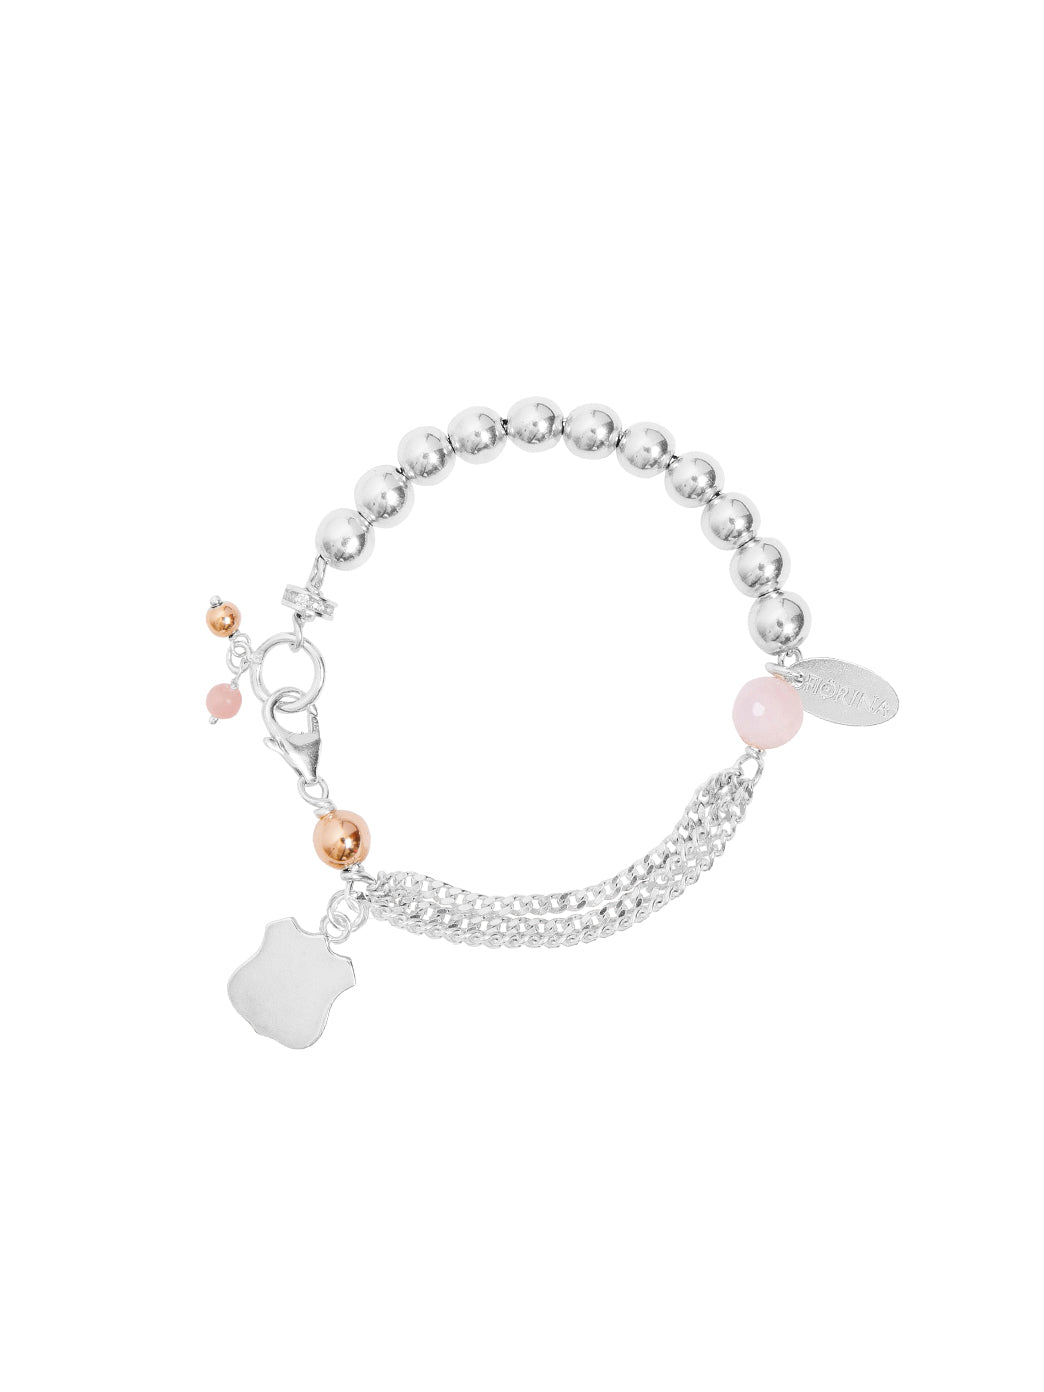 Fiorina Jewellery Simply Komboloy Bracelet Pink Opal